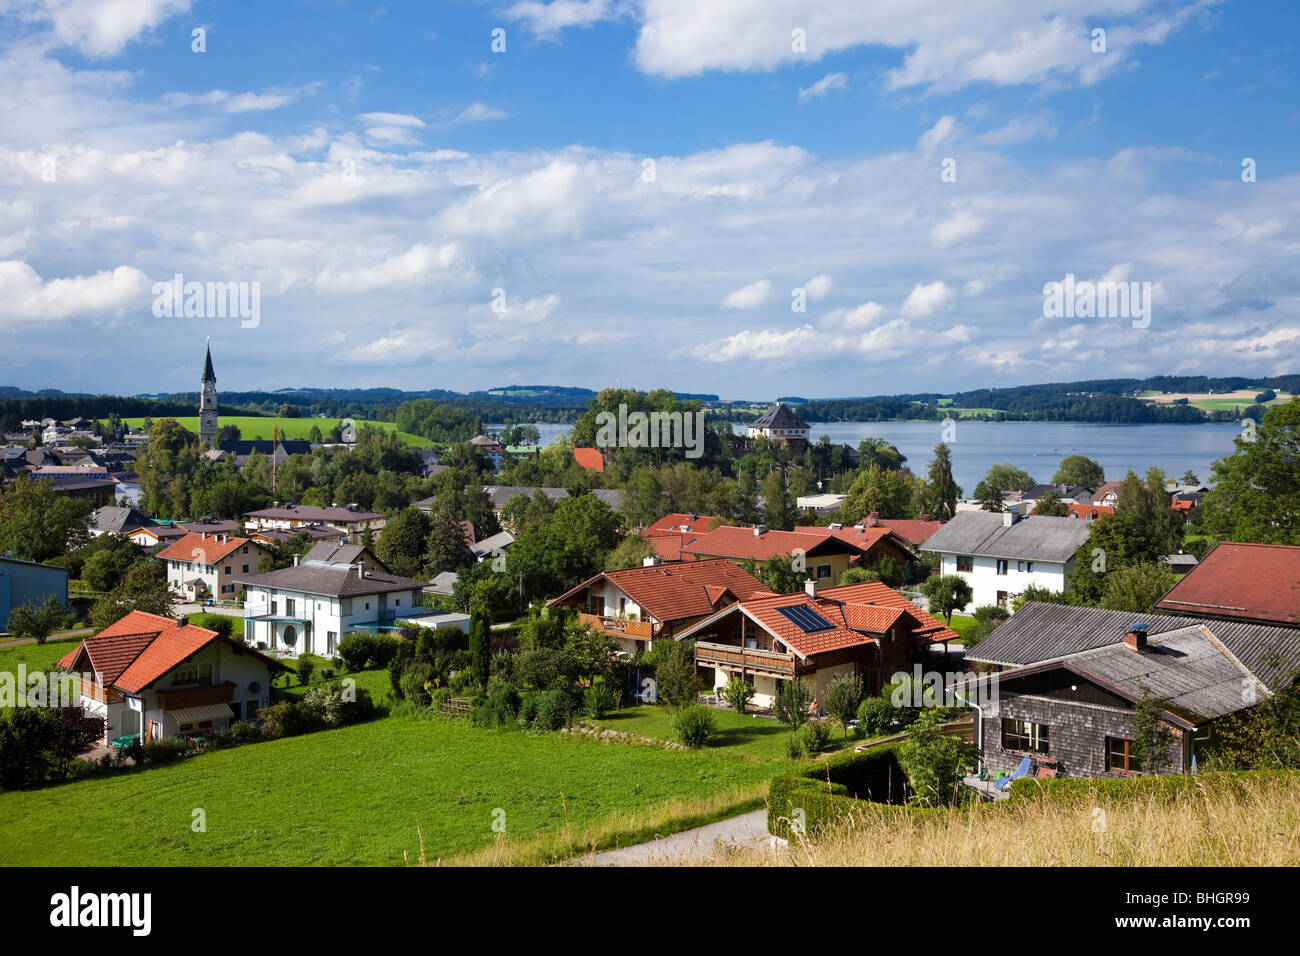 Autriche : Ville de Mattsee et lac Mattsee dans le district du lac autrichien, l'Autriche, Europe Banque D'Images